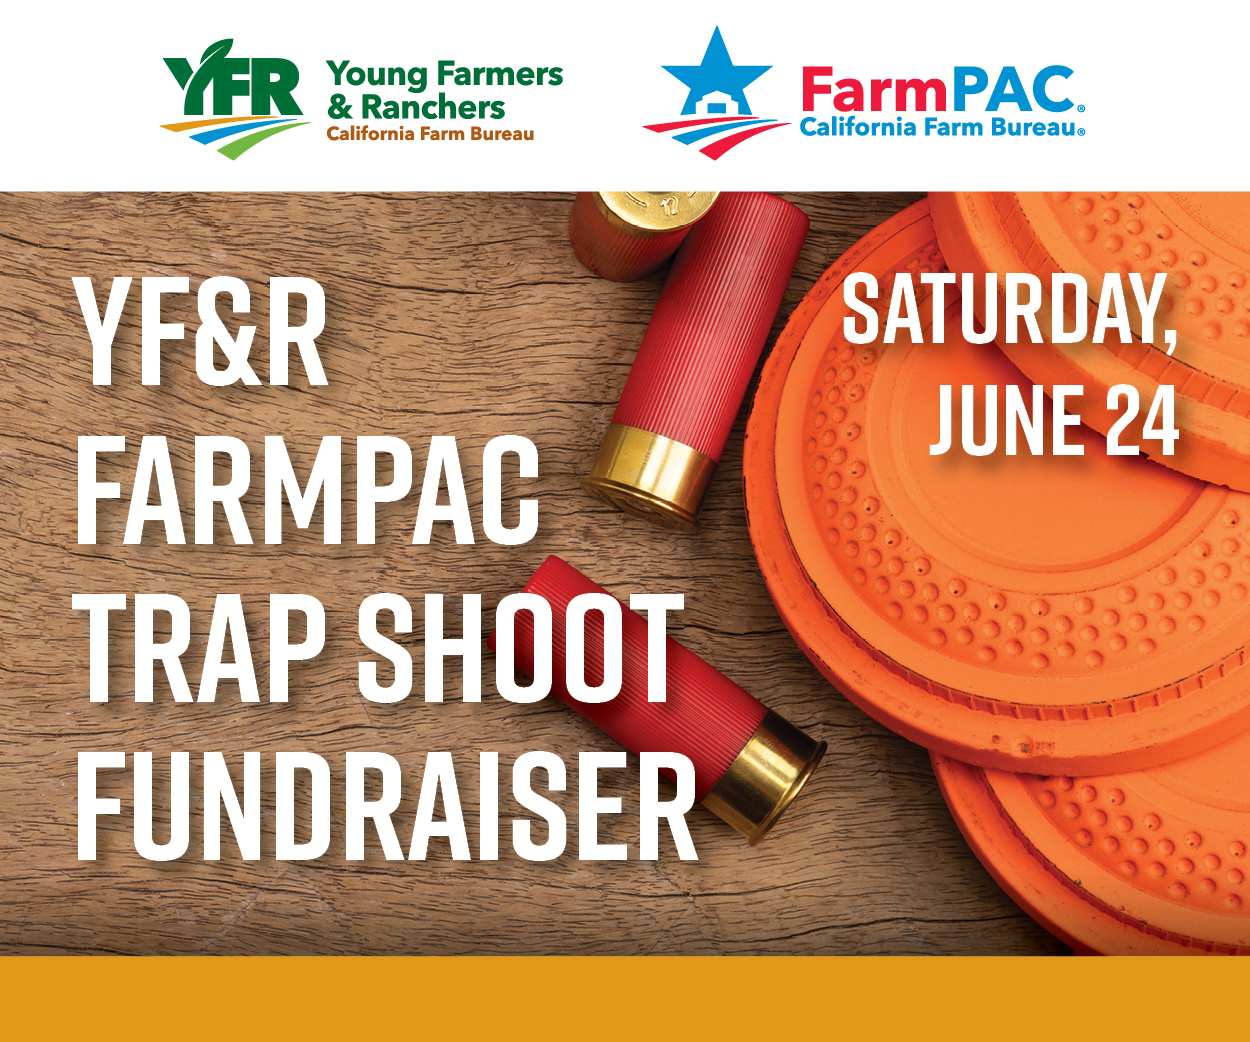 Support FarmPAC